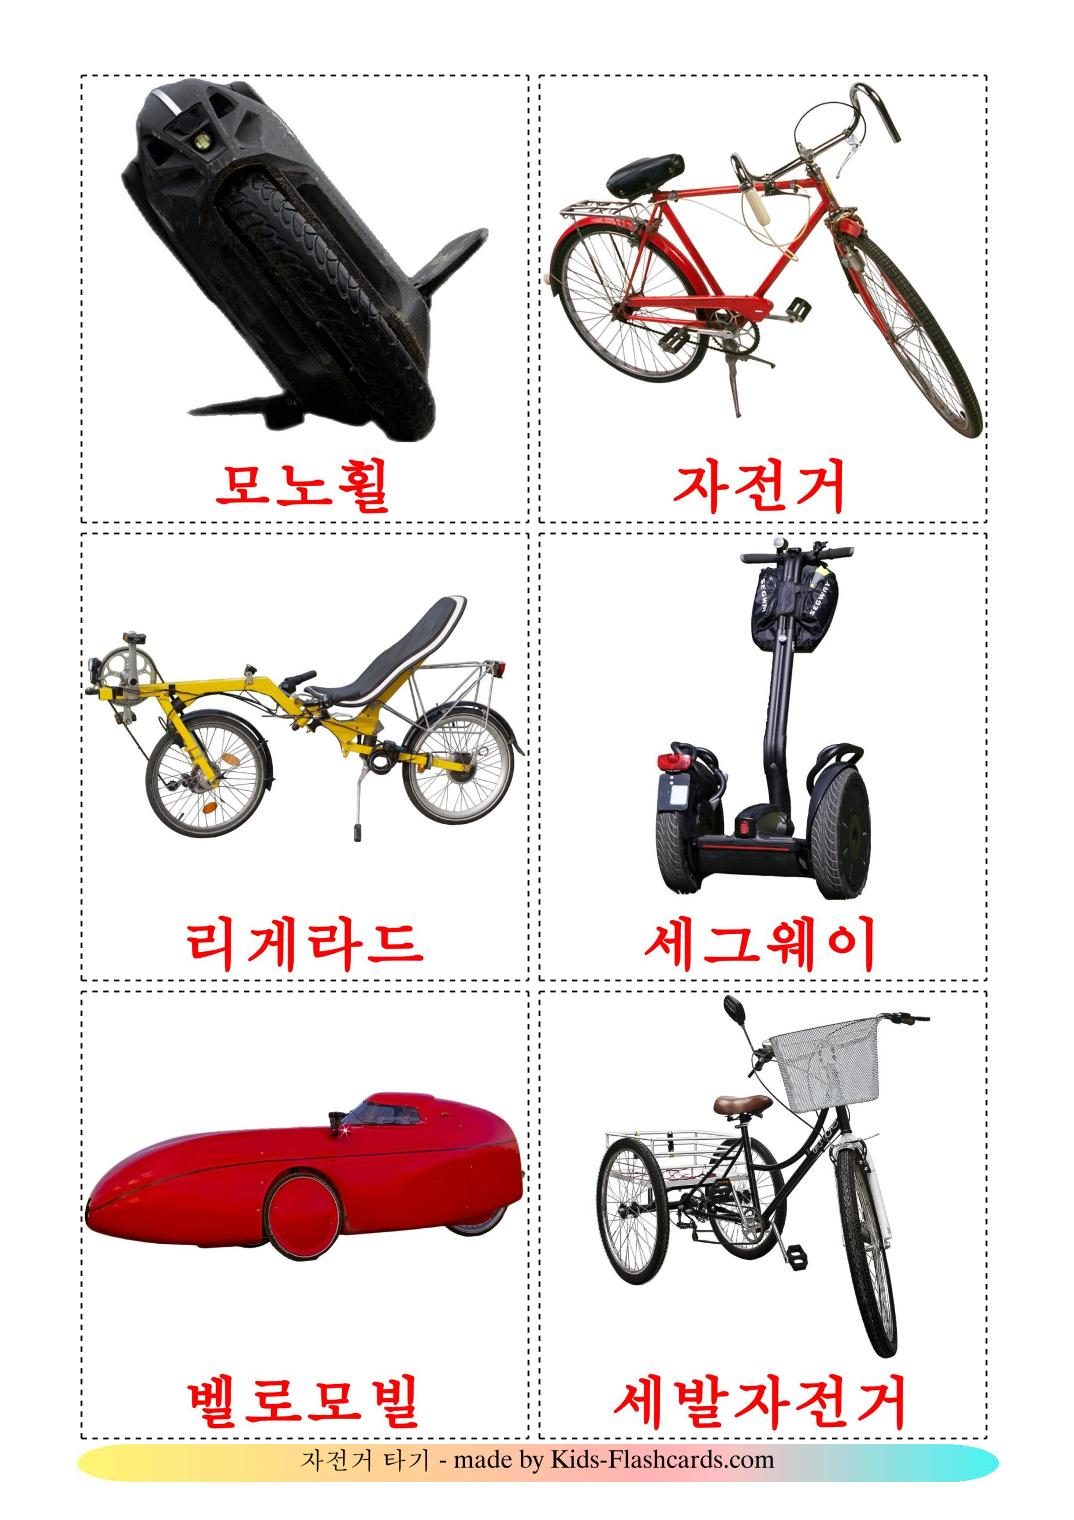 Transporte de Bicicleta - 16 Flashcards coreanoes gratuitos para impressão